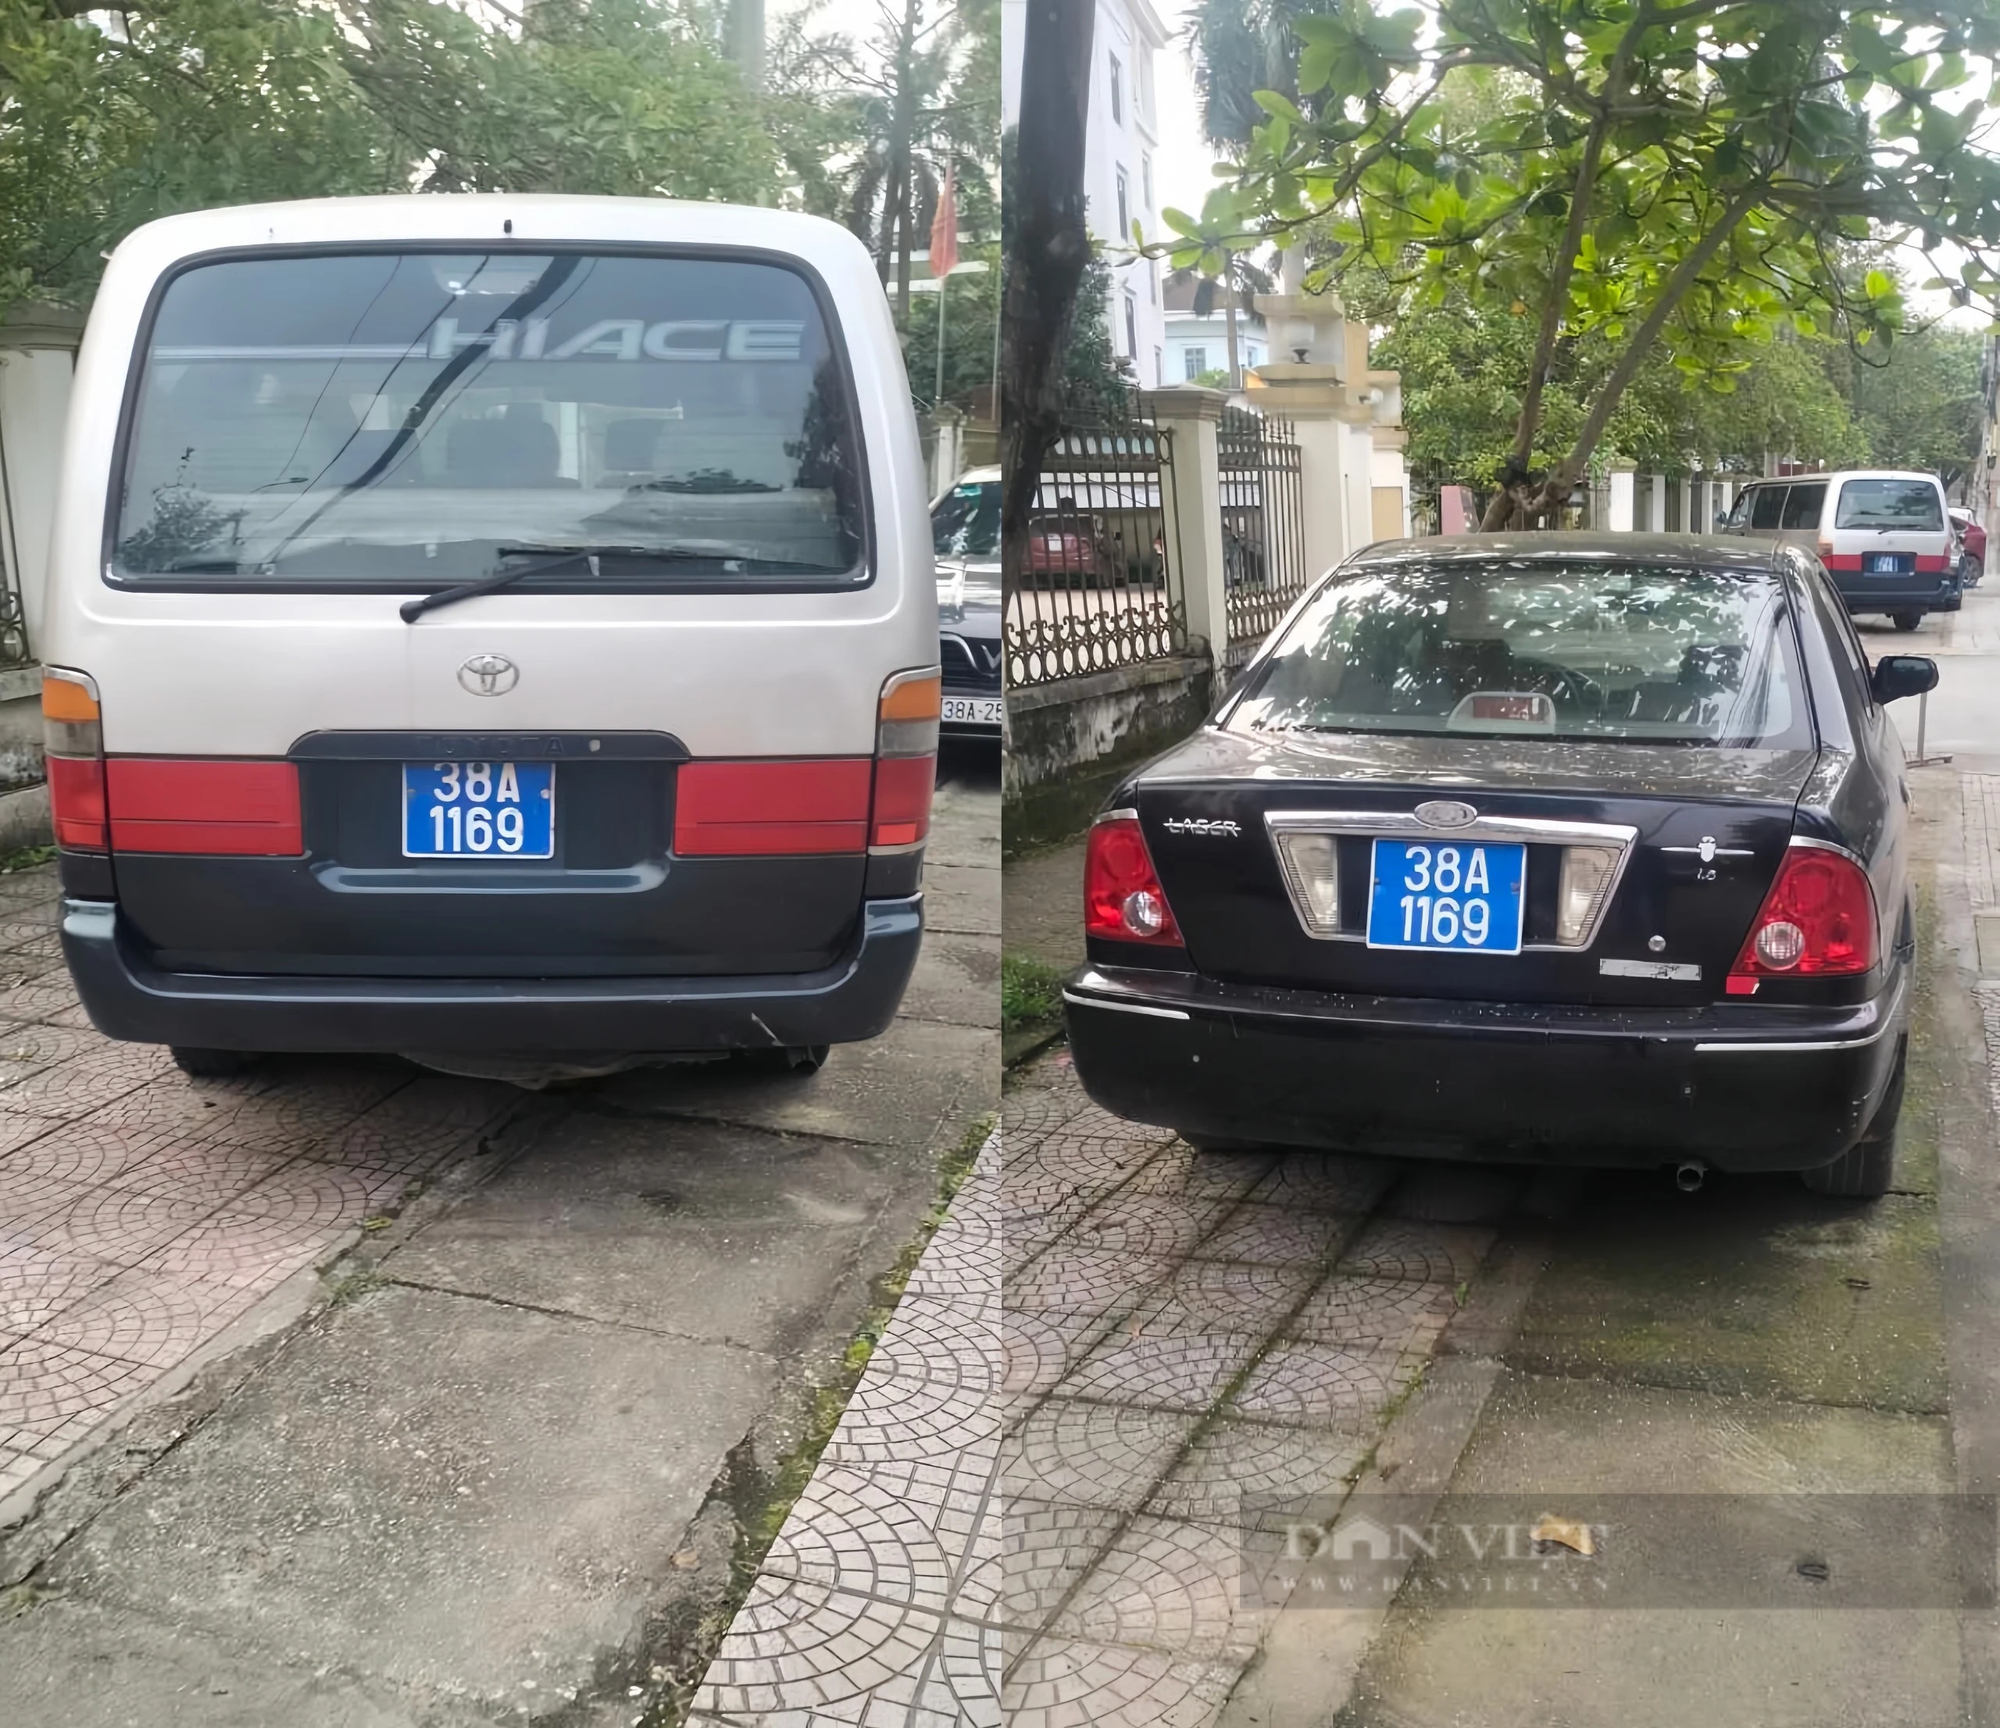 Hà Tĩnh: Xử phạt một tổ chức và hai cá nhân liên quan đến 2 xe ô tô cùng gắn biển số xanh 38A 1169- Ảnh 1.